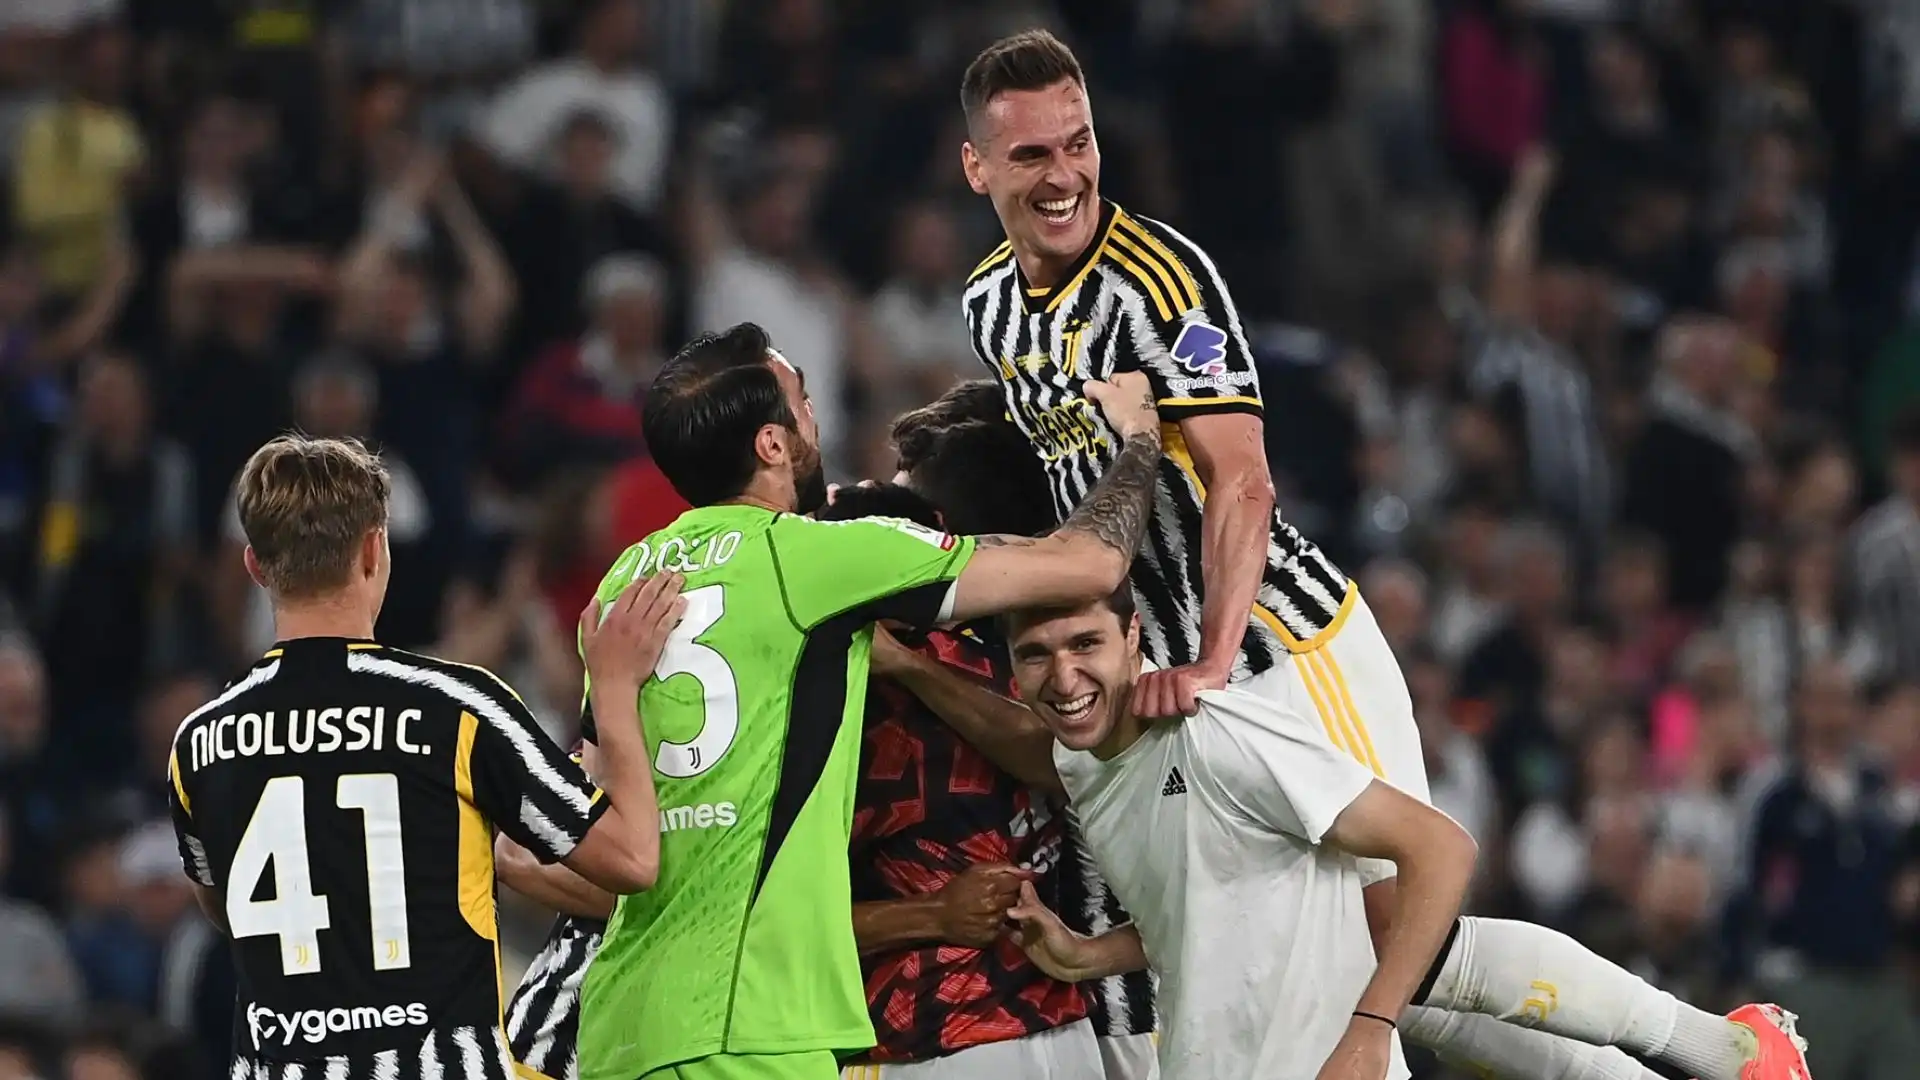 La Juventus ha vinto la 15esima Coppa Italia della sua storia, superando per 1-0 l'Atalanta